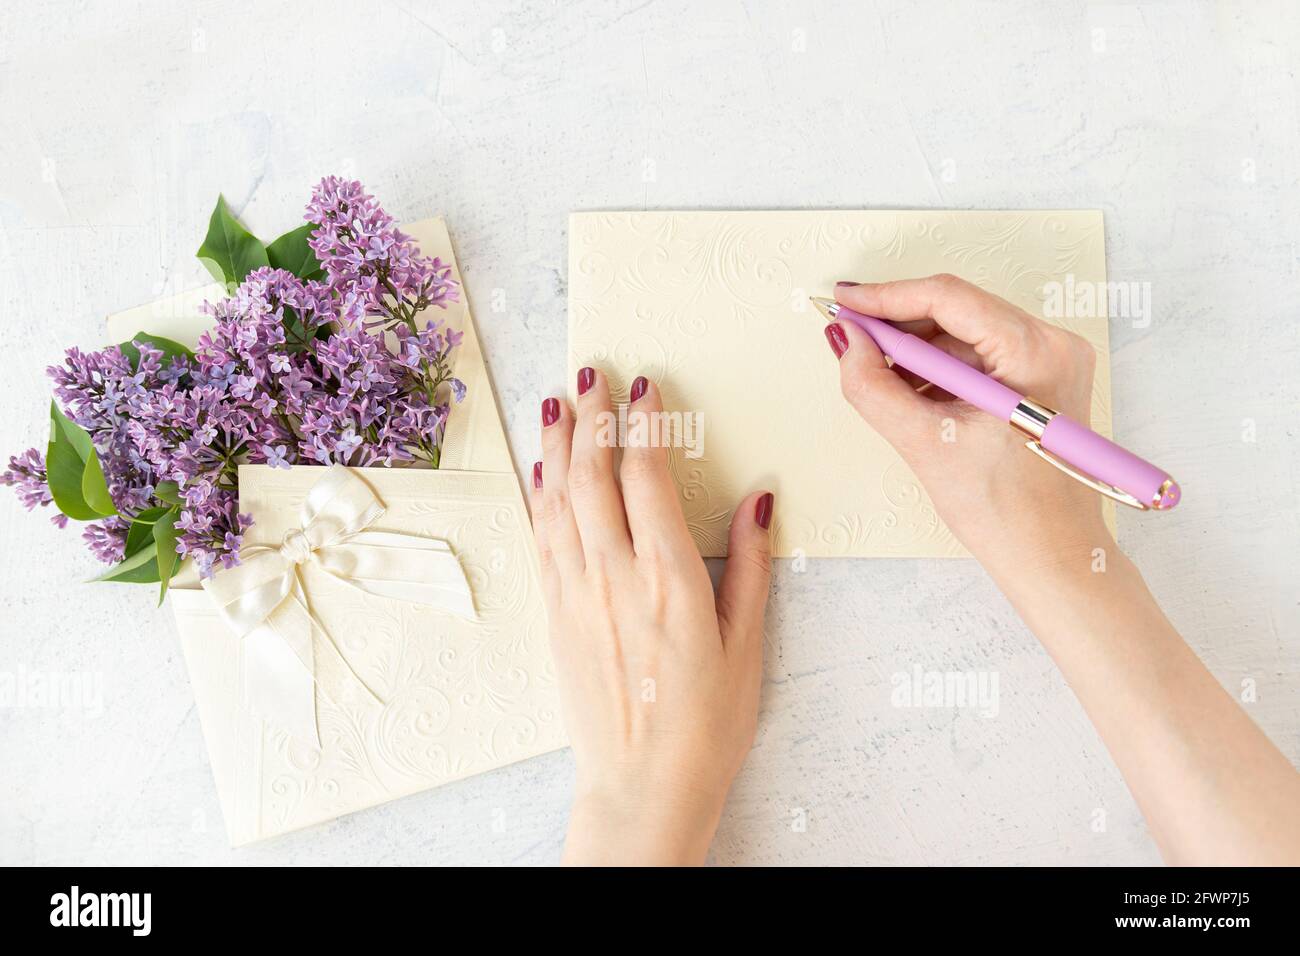 Die Hände der Frau schreiben auf einer leeren Karte oder leeren, in der Nähe von violetten Blumen in einem schönen Umschlag mit einer Schleife. Wunderschöne Fliederblüten. Flach legen mit Feder blo Stockfoto